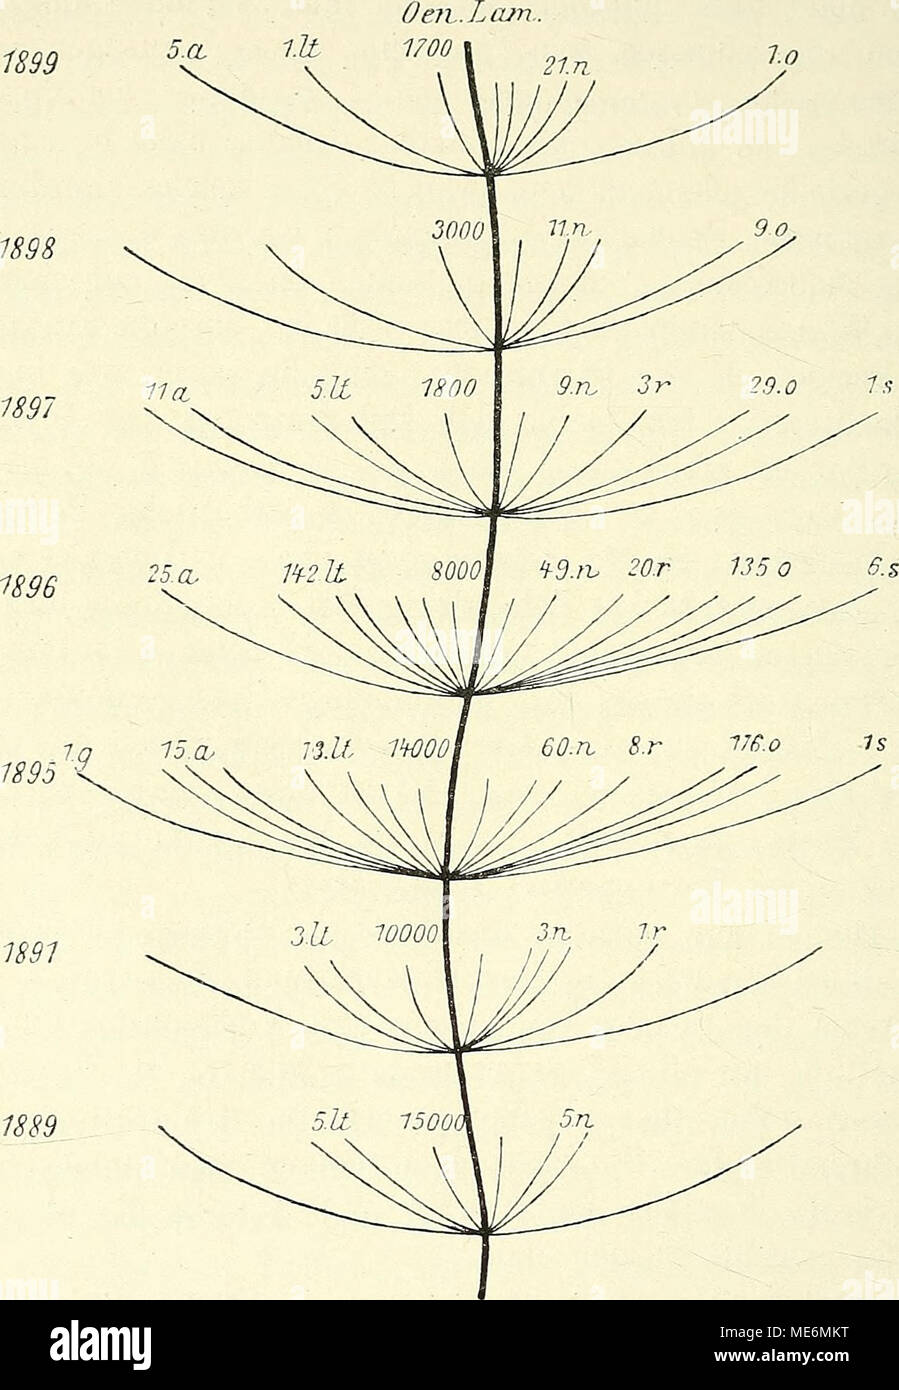 Die Mutationstheorie. Beobachtungen und Versuche über die entstehung von  arten pflanzenreich im . Fig. 158. Stammbaum von Oenothera LamarcMana, die  Entstehung jährliche neuer Arten im Versuchsgarten in den Jahren 1889-1899  darstellend,